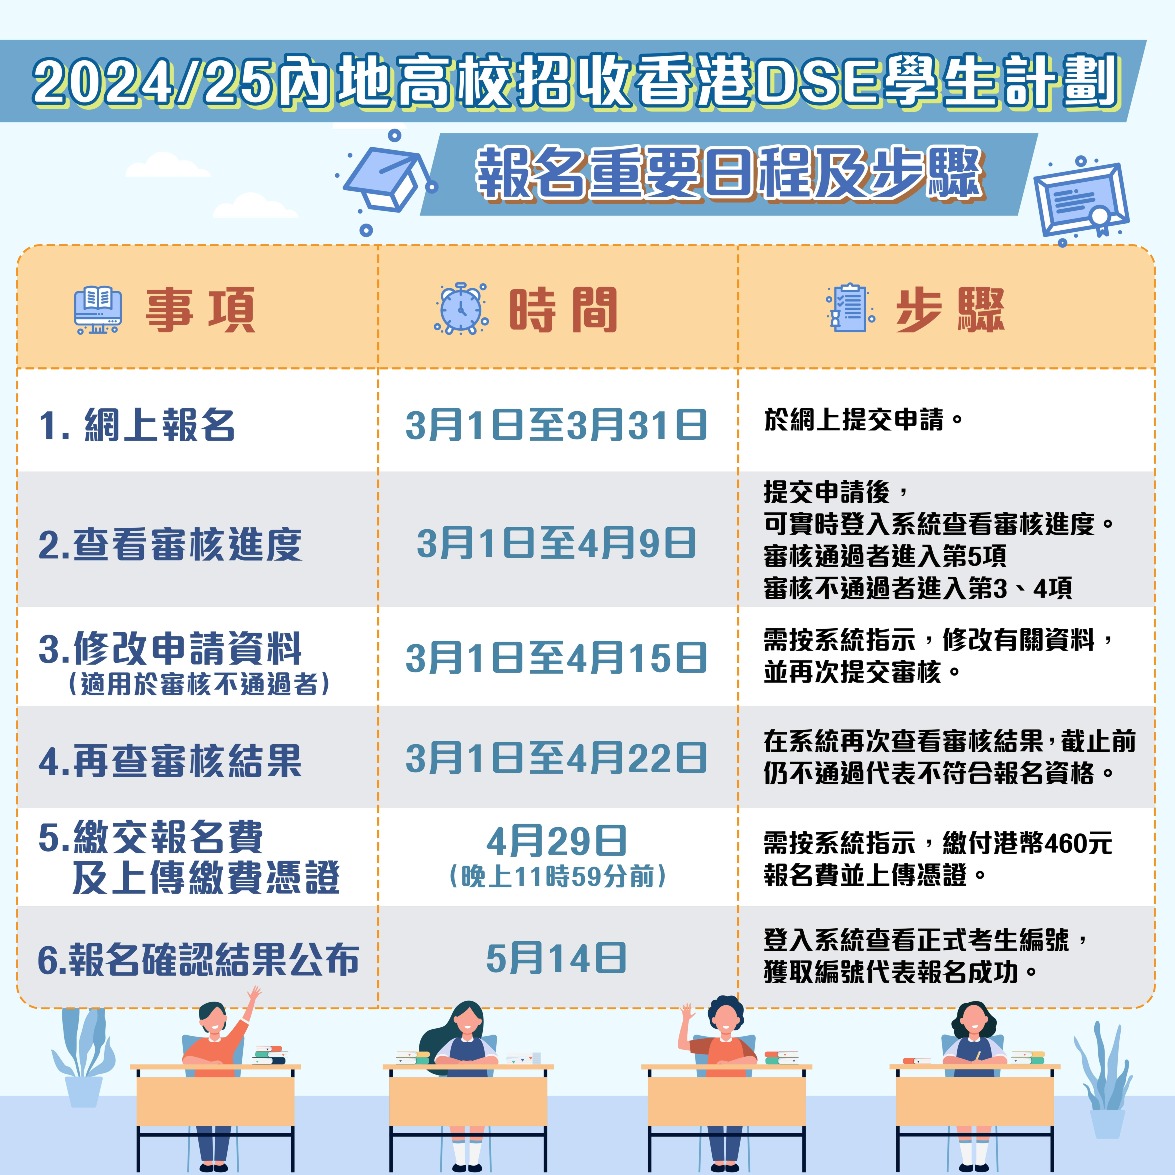 2024/25内地高校招收香港DSE考生计划报名日程